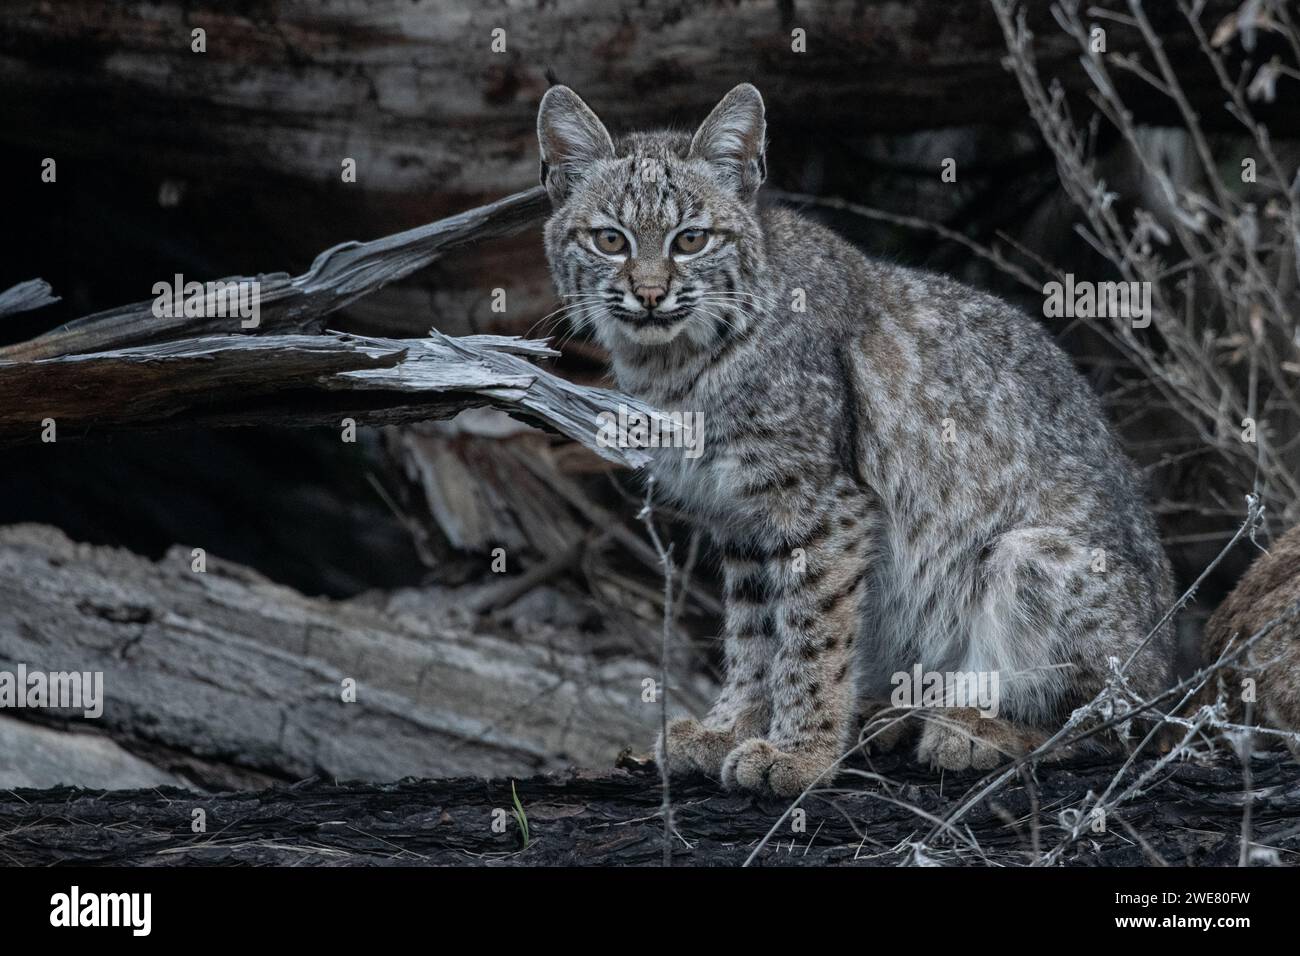 Un chaton lynx rufus (lynx rufus) de la région de la baie de San Francisco en Californie, aux États-Unis. Banque D'Images